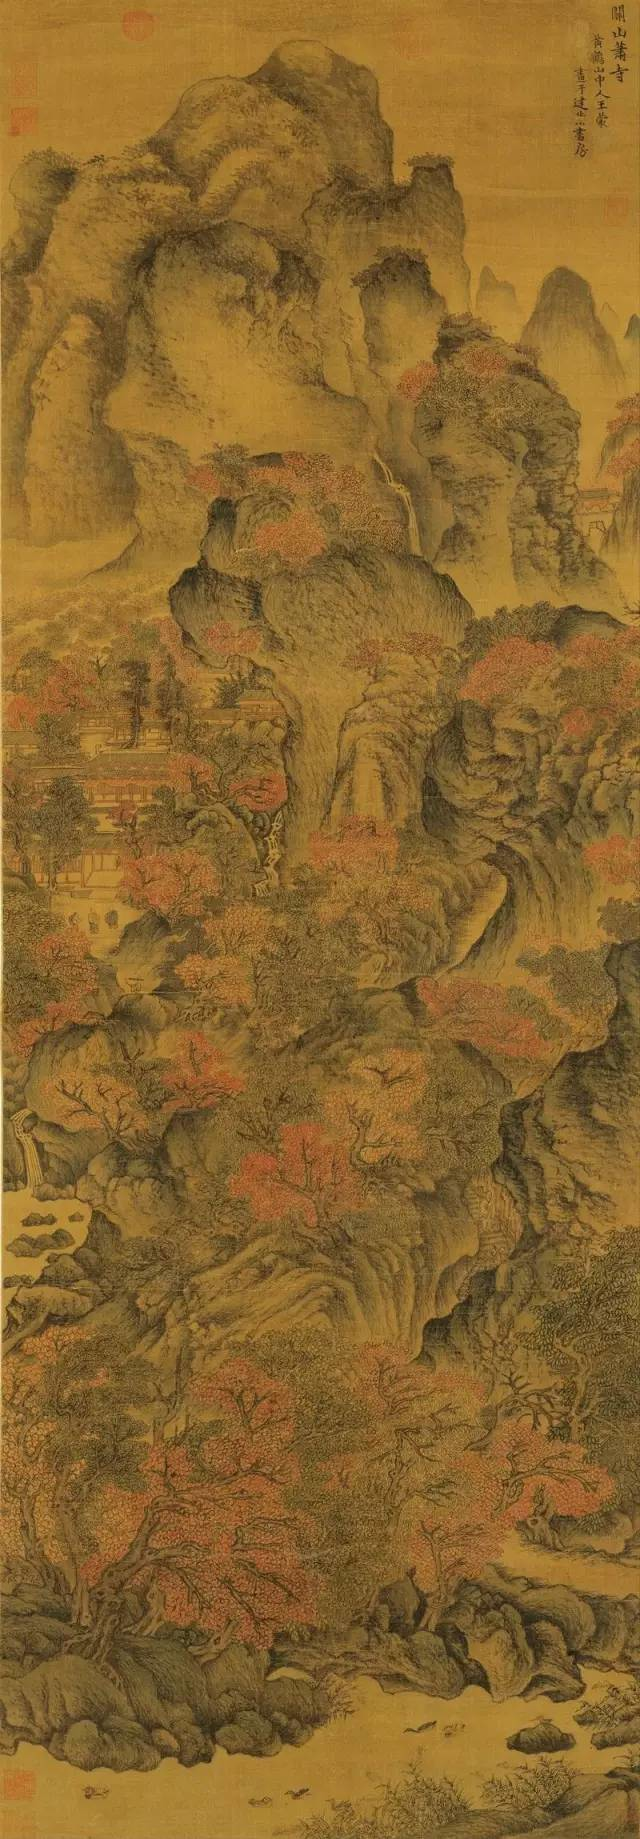 元 王蒙 关山箫寺图 1617×56cm 现藏北京故宫博物院